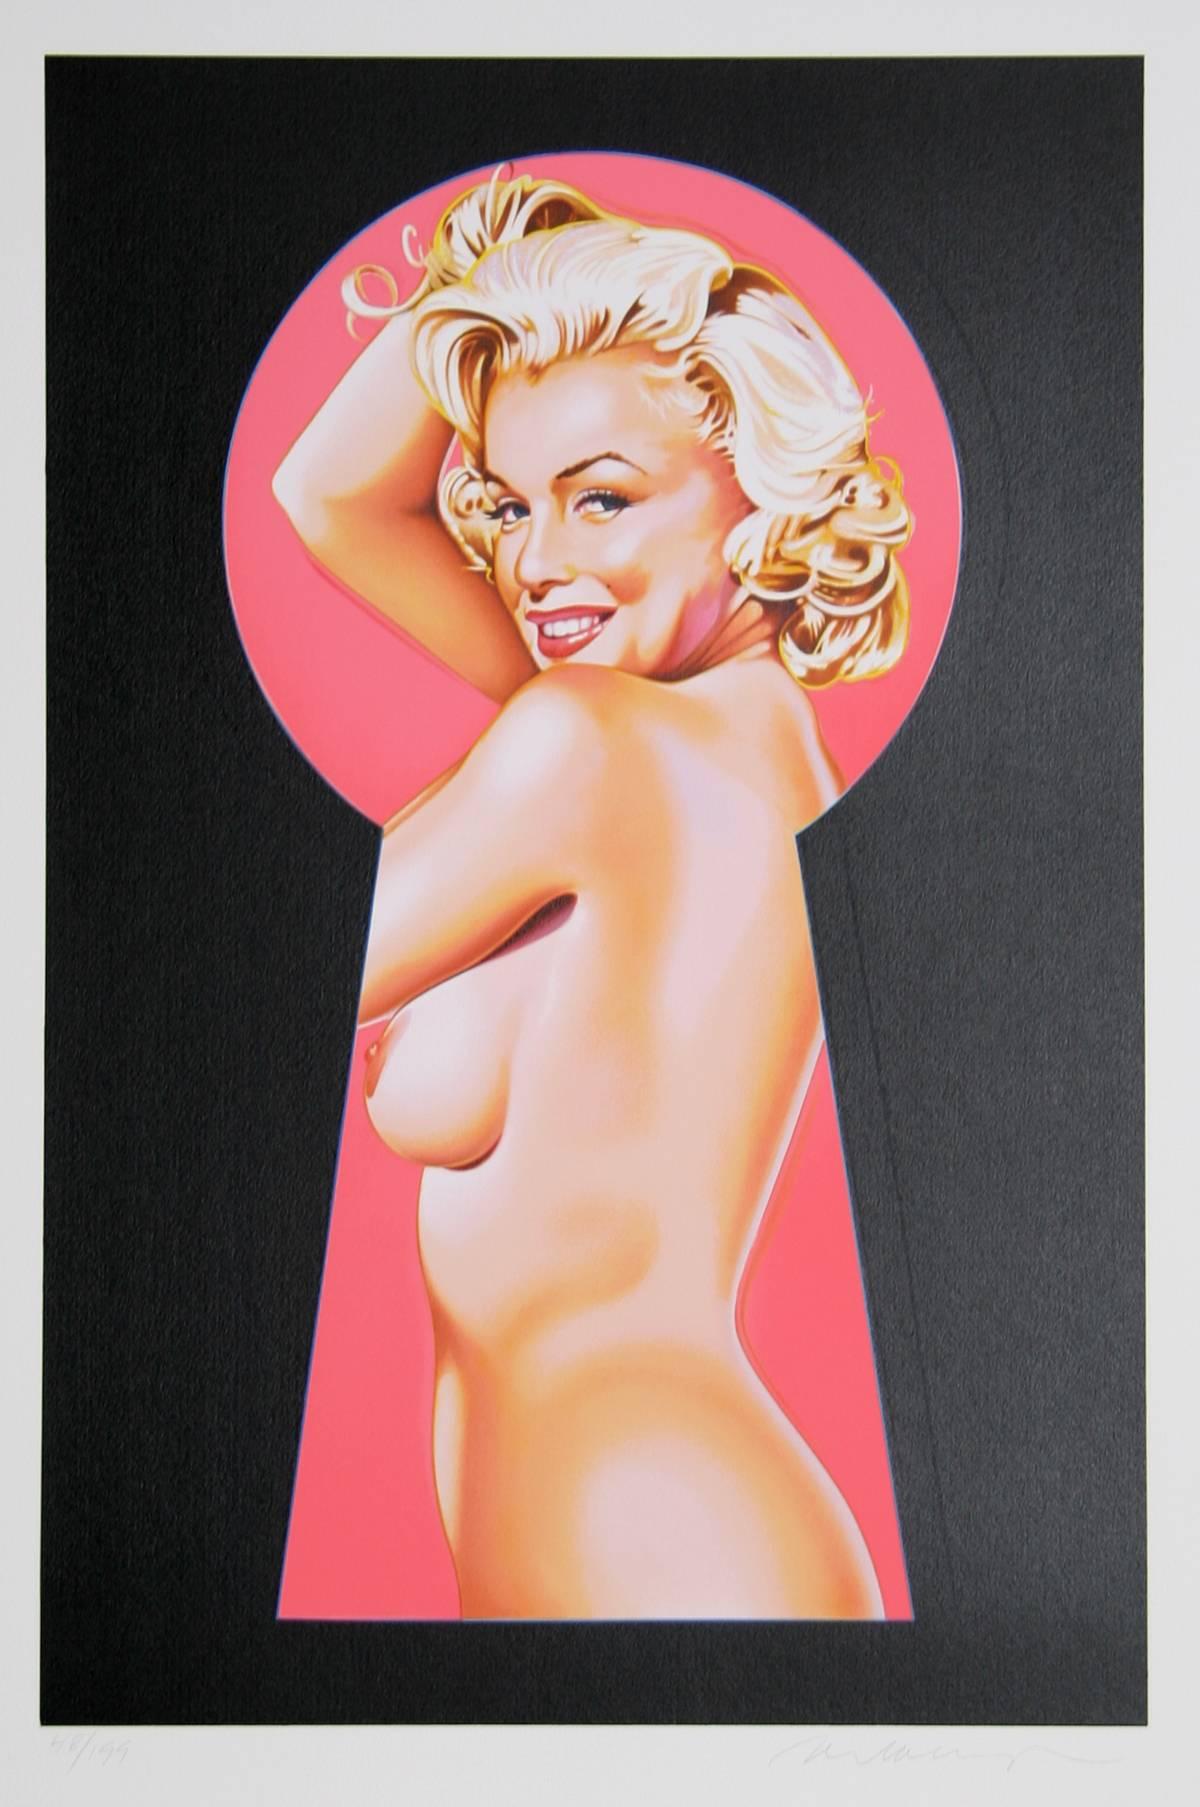 Künstler: Mel Ramos (Amerikaner, geb. 1935)
Titel: Kuckuck, Marilyn 1
Jahr: 2002
Medium: Lithographie, mit Bleistift signiert und nummeriert
Auflage: 199
Größe: 31.5 in. x 23 in. (80,01 cm x 58,42 cm)